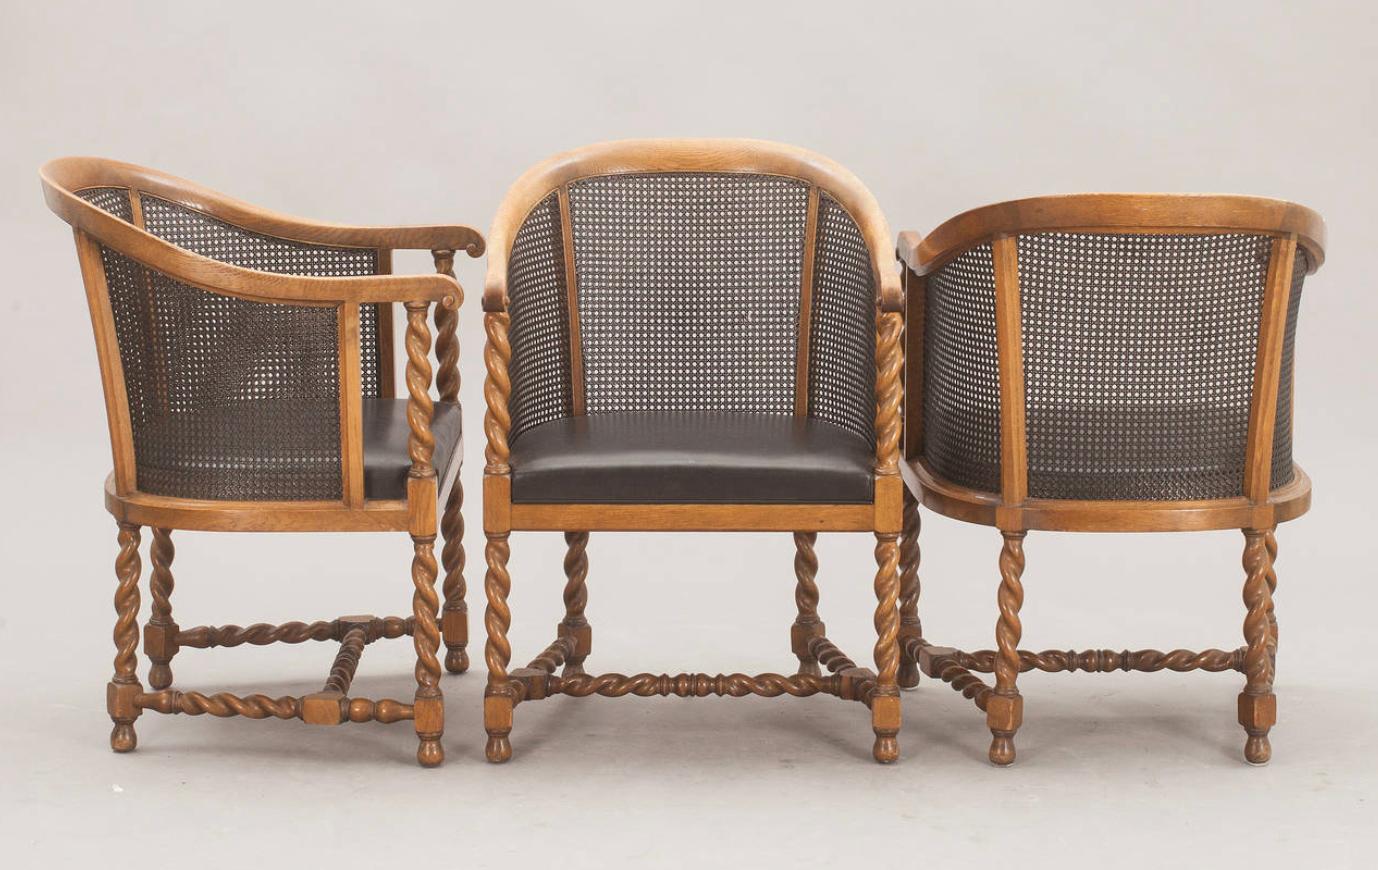 Scandinavian Modern Chairs by Nordiska Kompaniet, 1926 For Sale